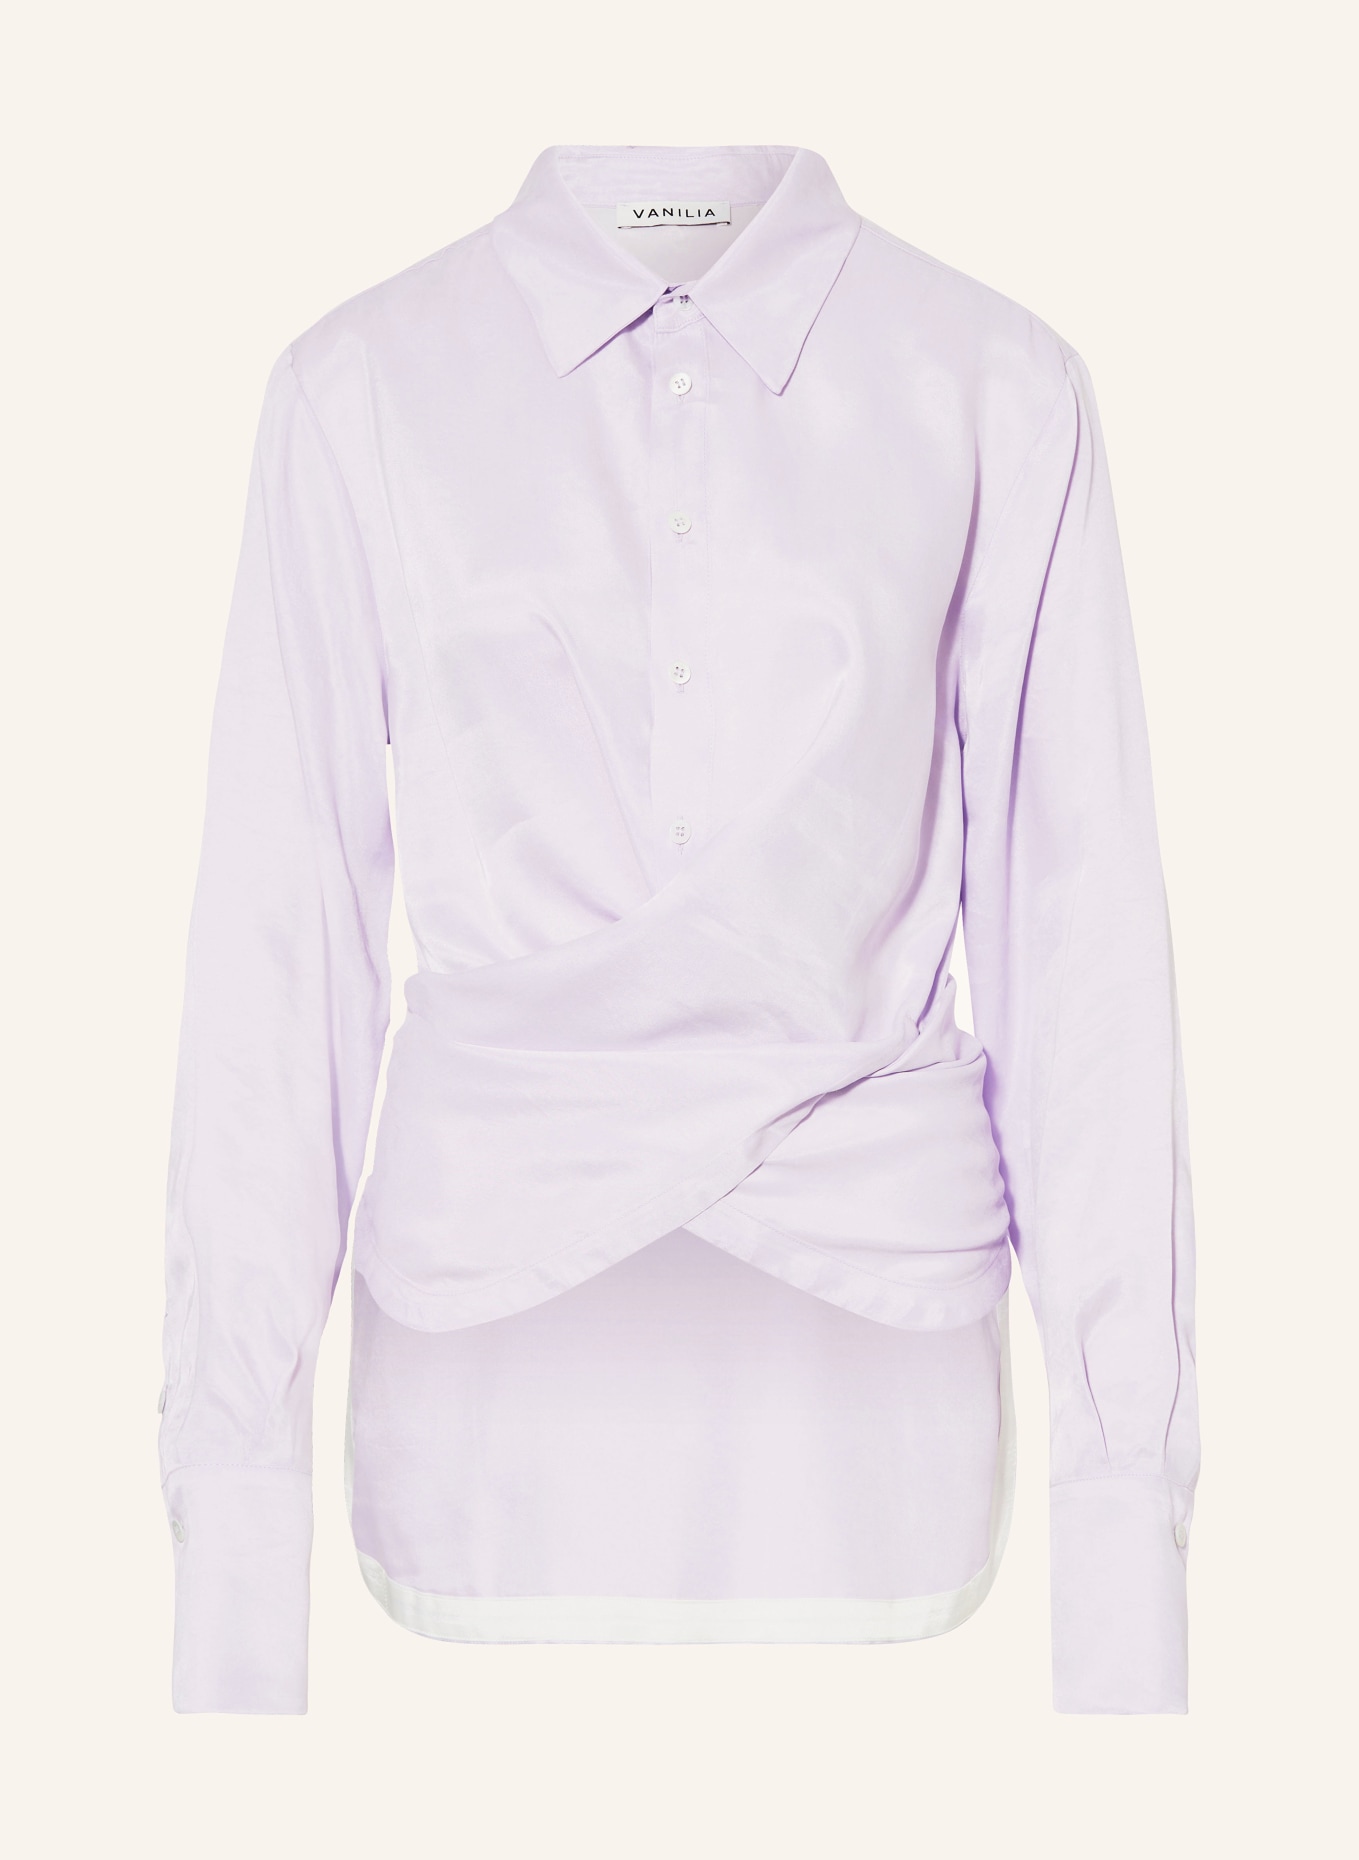 VANILIA Shirt blouse, Color: 6369 Purple rose (Image 1)